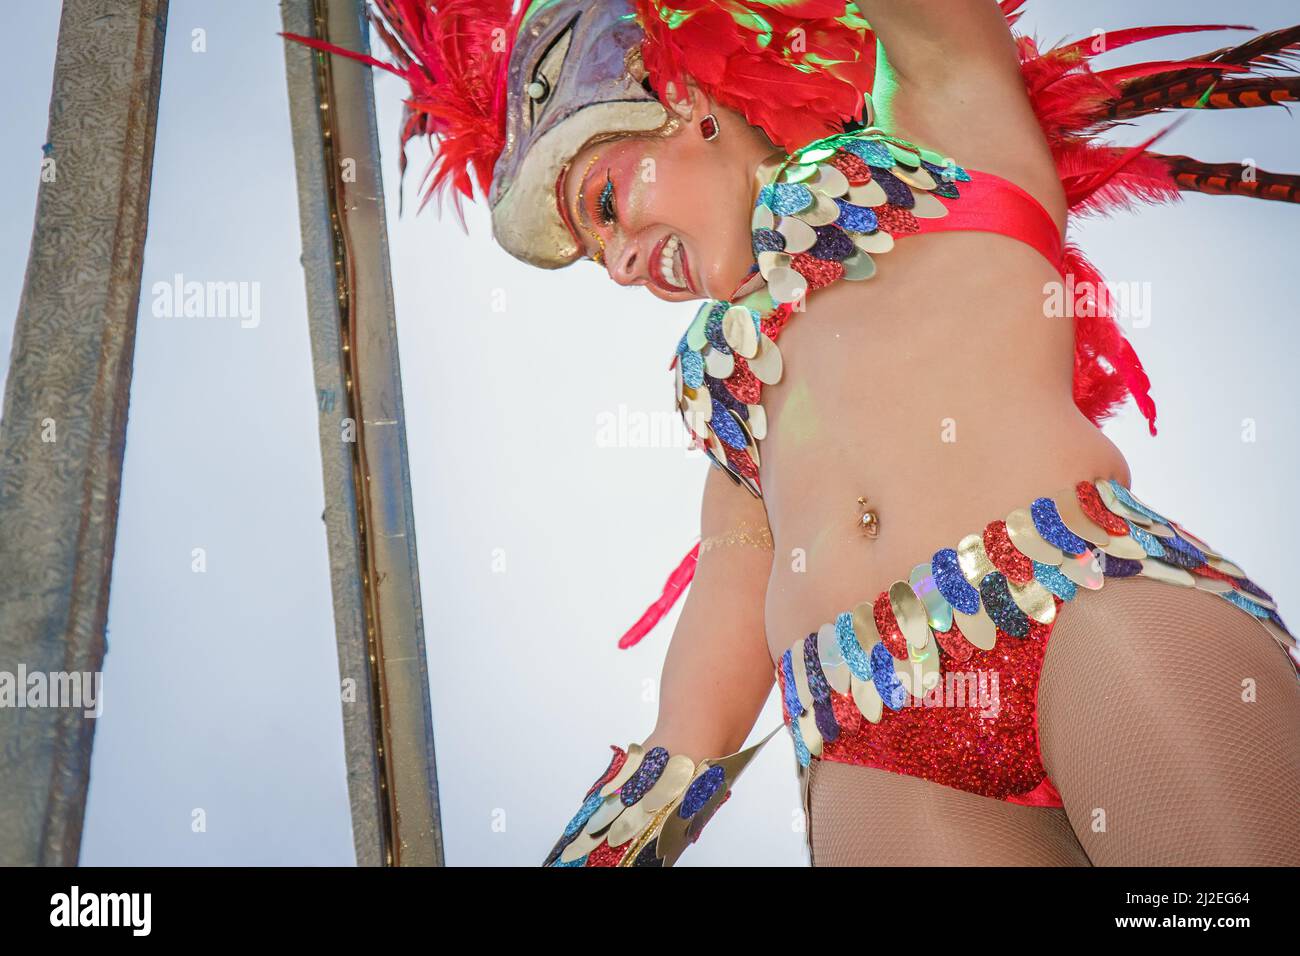 Portugal Karneval - Grupo Costa de Prata - Ovar 2016 Karnevalsparade in Ovar. Junge lächelnde Frau, die in einem rot-gefiederten Kostüm im brasilianischen Stil auftrat. Stockfoto